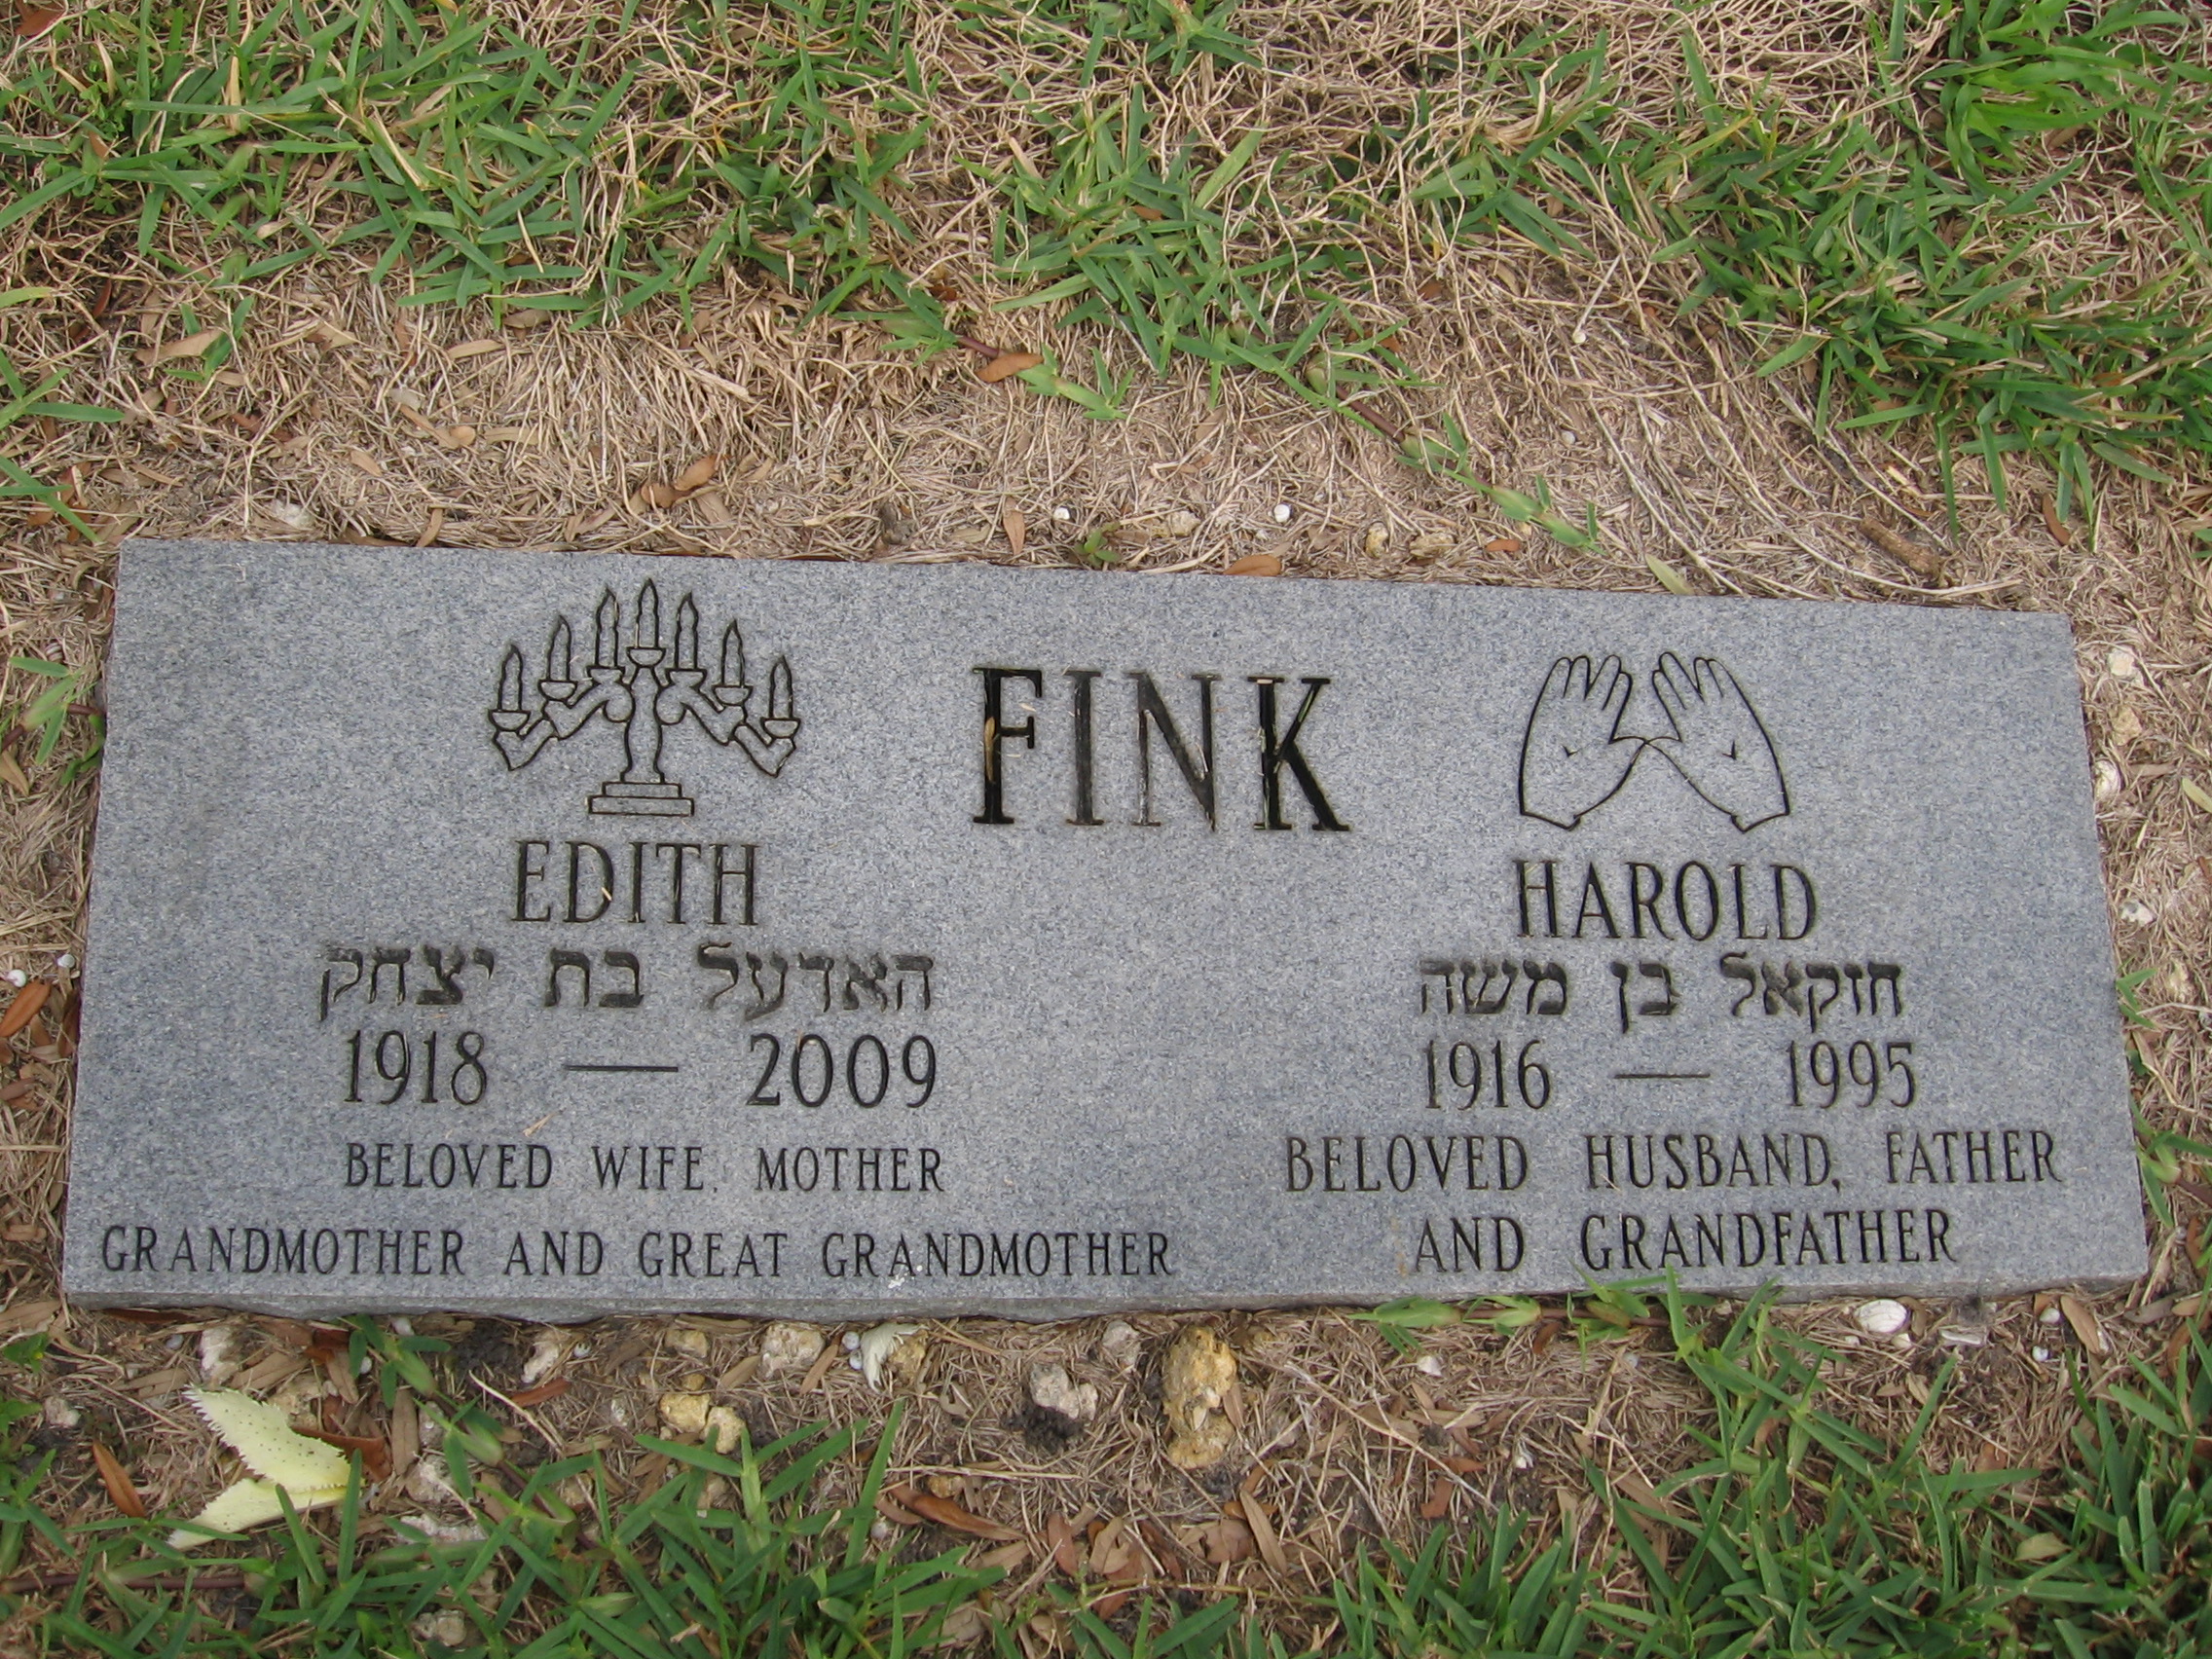 Harold Fink